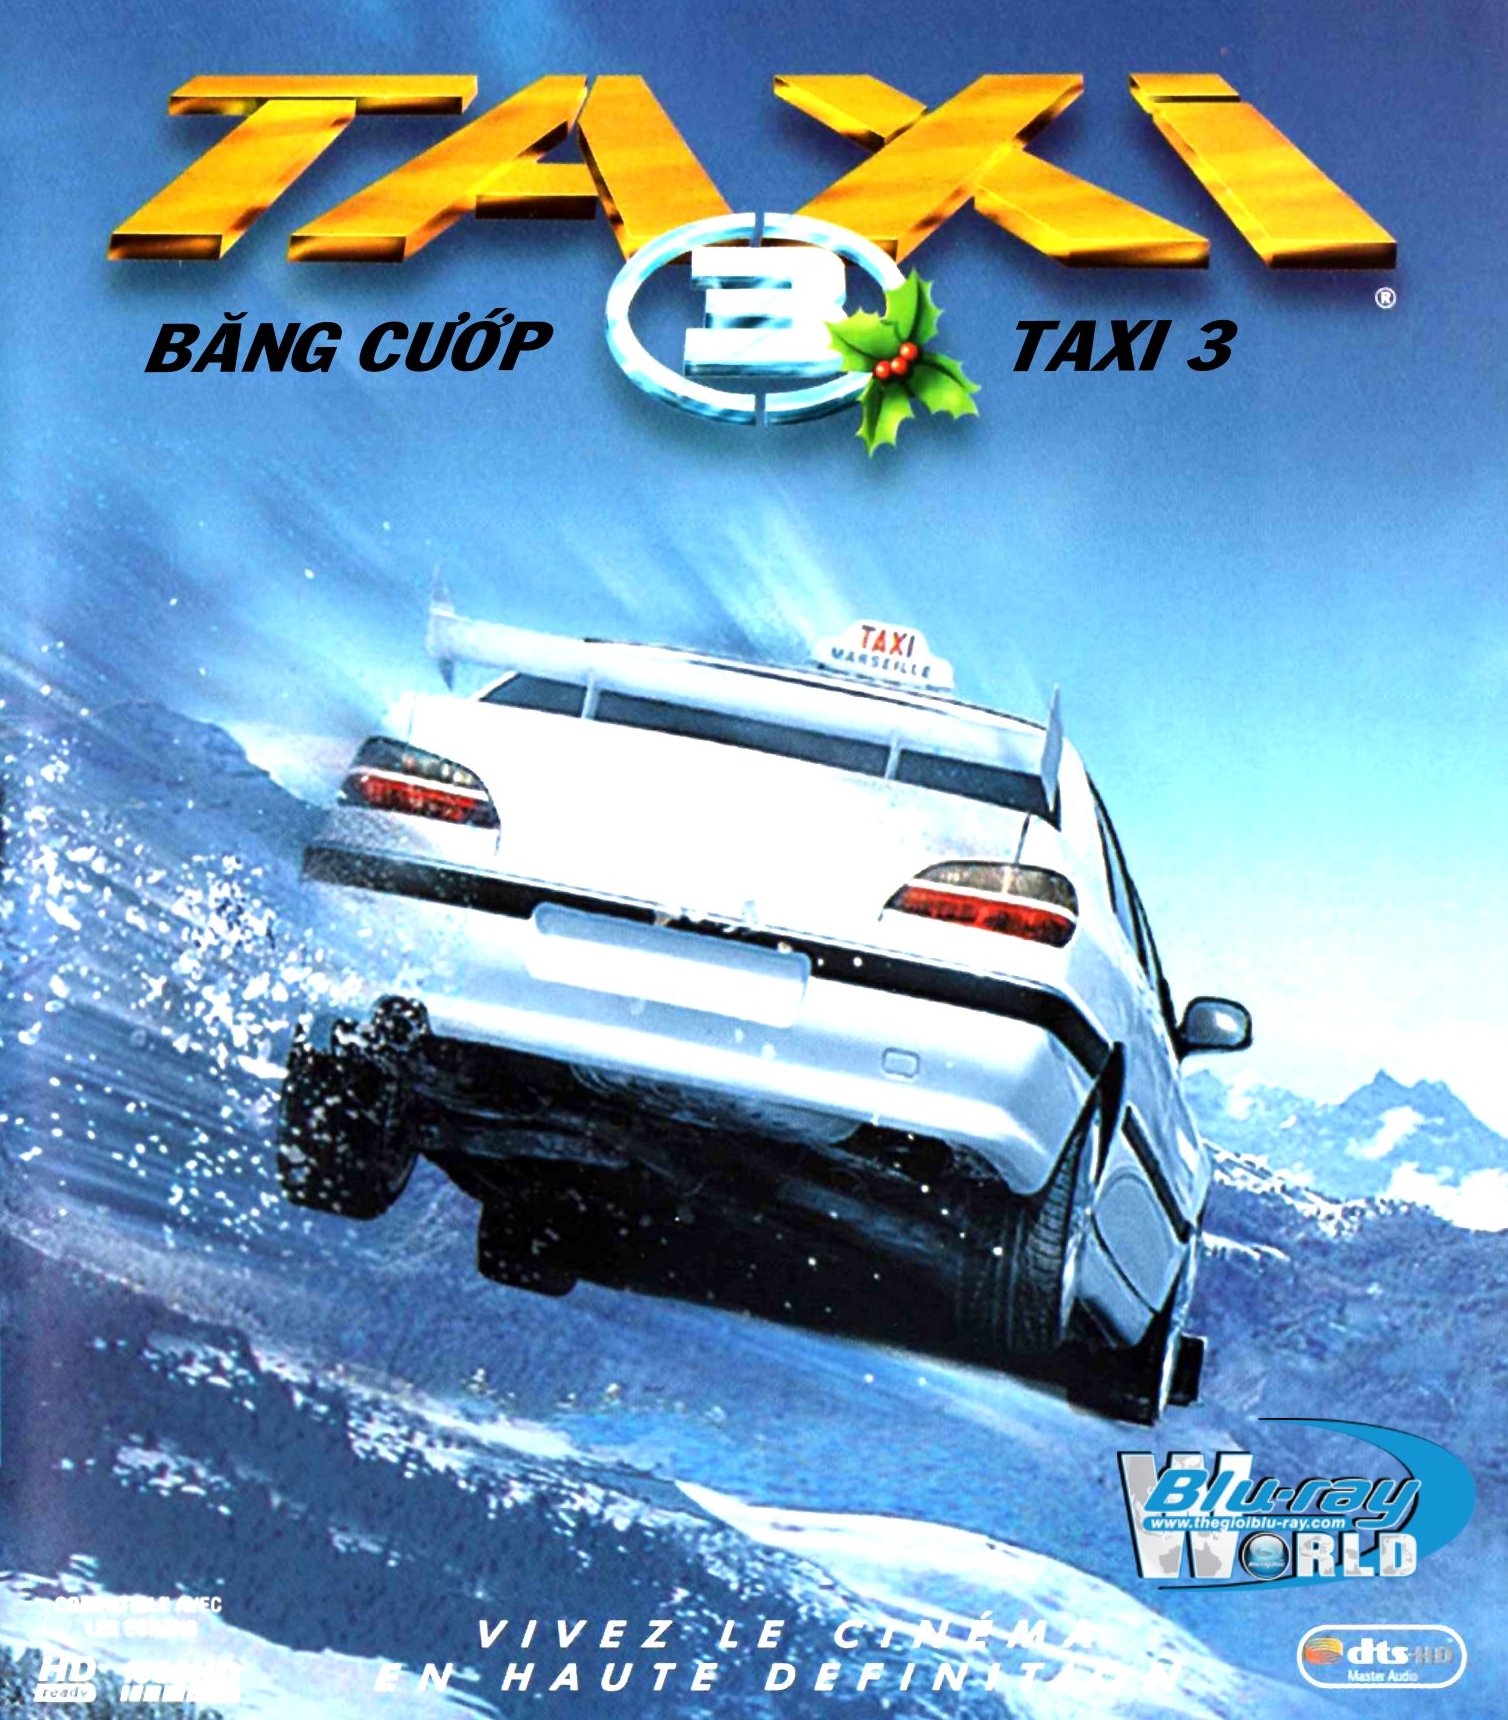 B1714. Taxi 3 - BĂNG CƯỚP TAXI 3 2D 25G (DTS-HD MA 5.1)